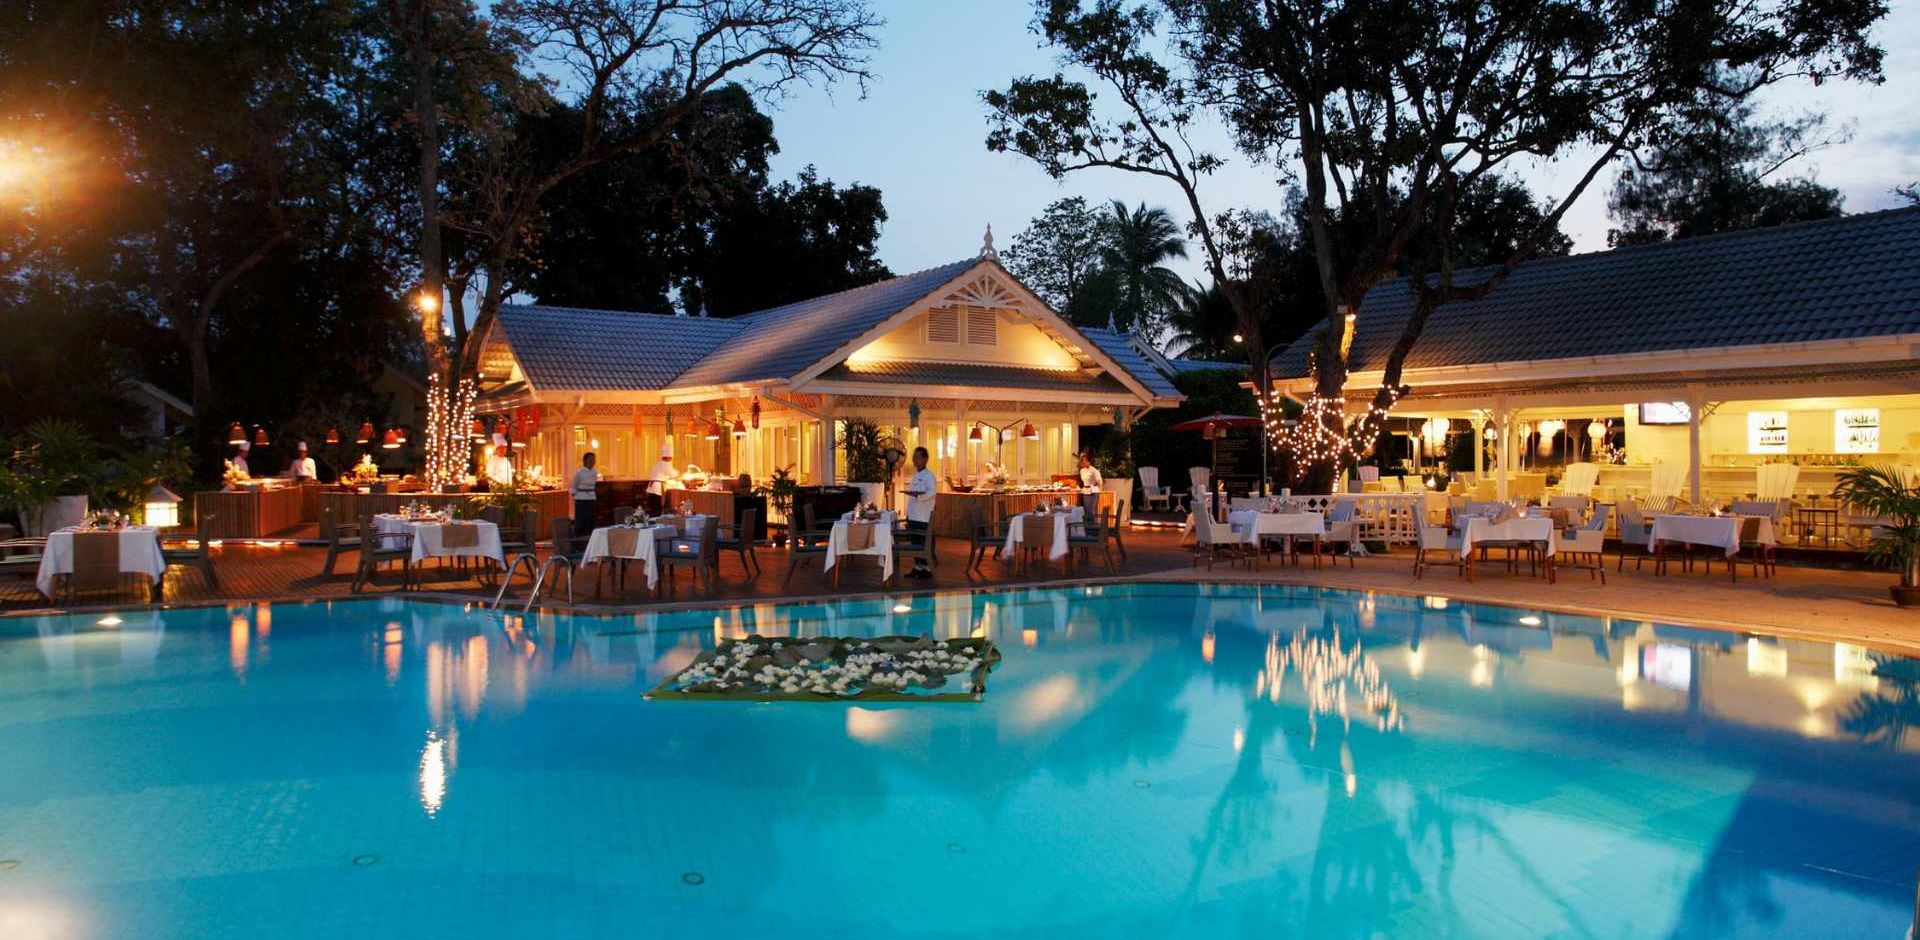 Thailand, Hua Hin, Centara Grand Beach Resort & Villas, Restaurant Evening